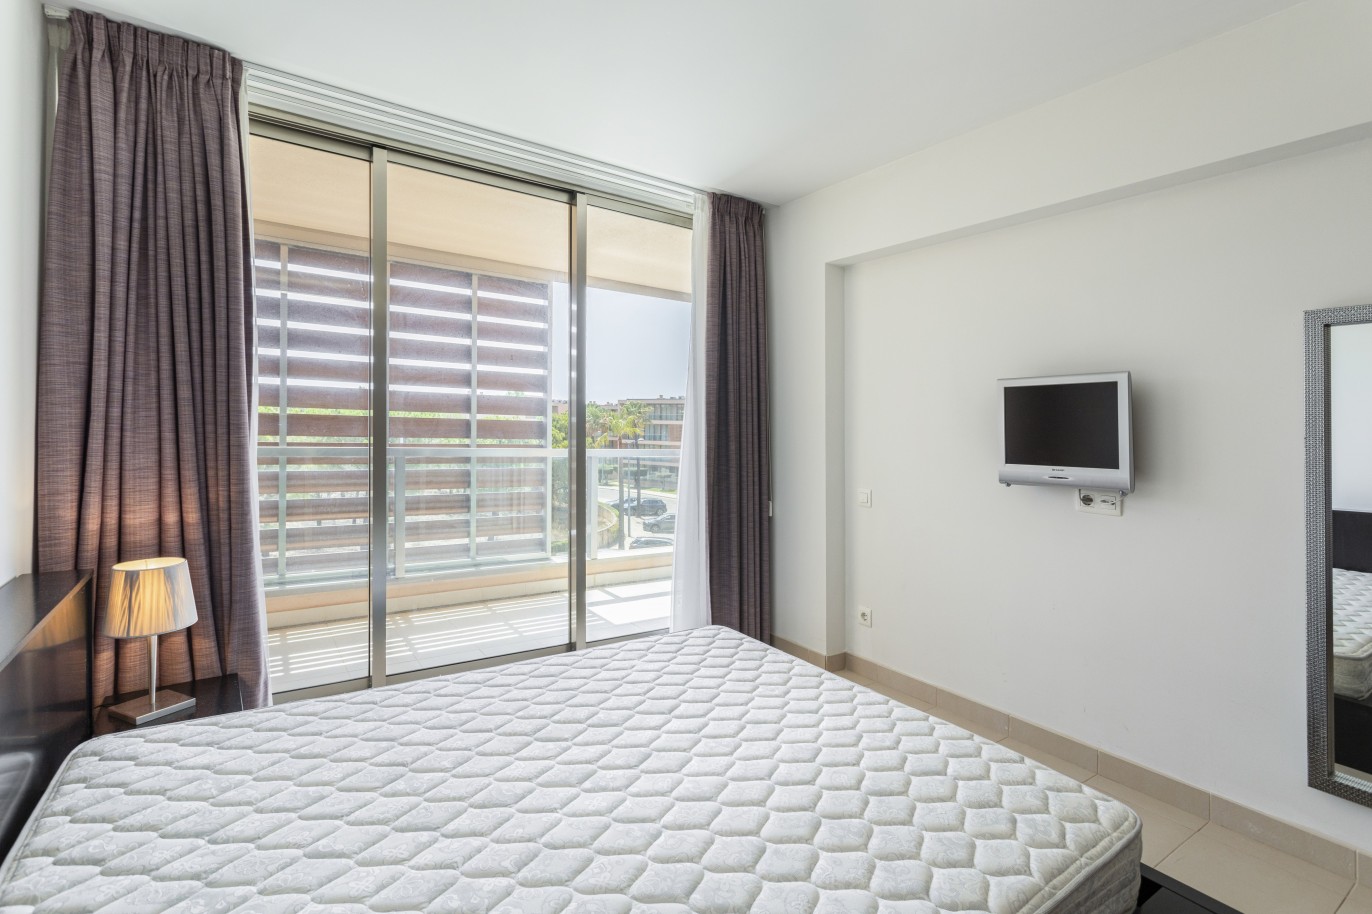 1 bedroom apartment in luxury condominium, for sale in Salgados, Algarve_228198